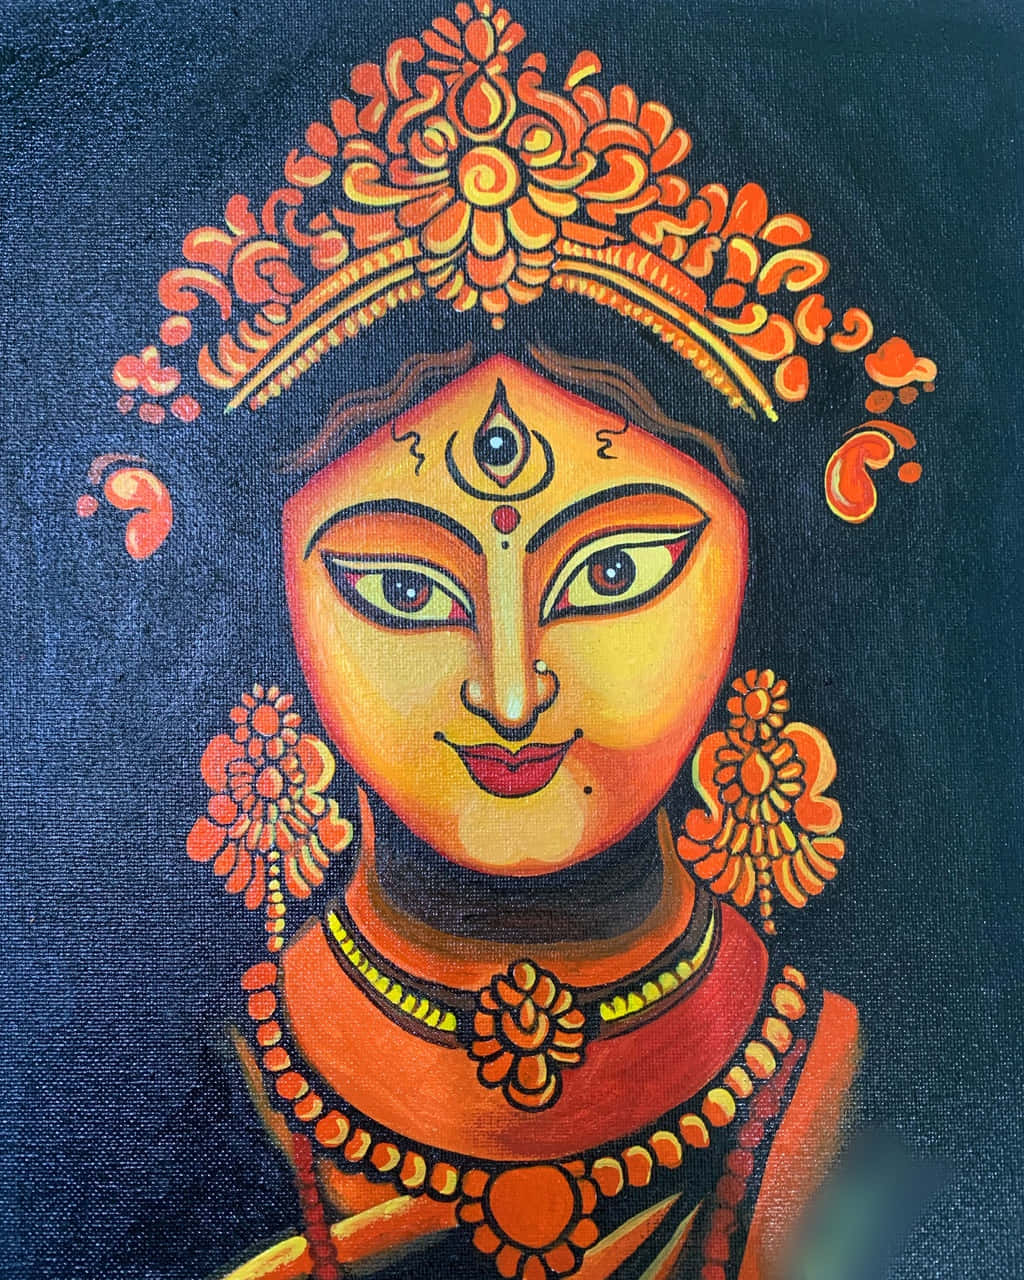 Gemäldeder Göttin Durga Maa